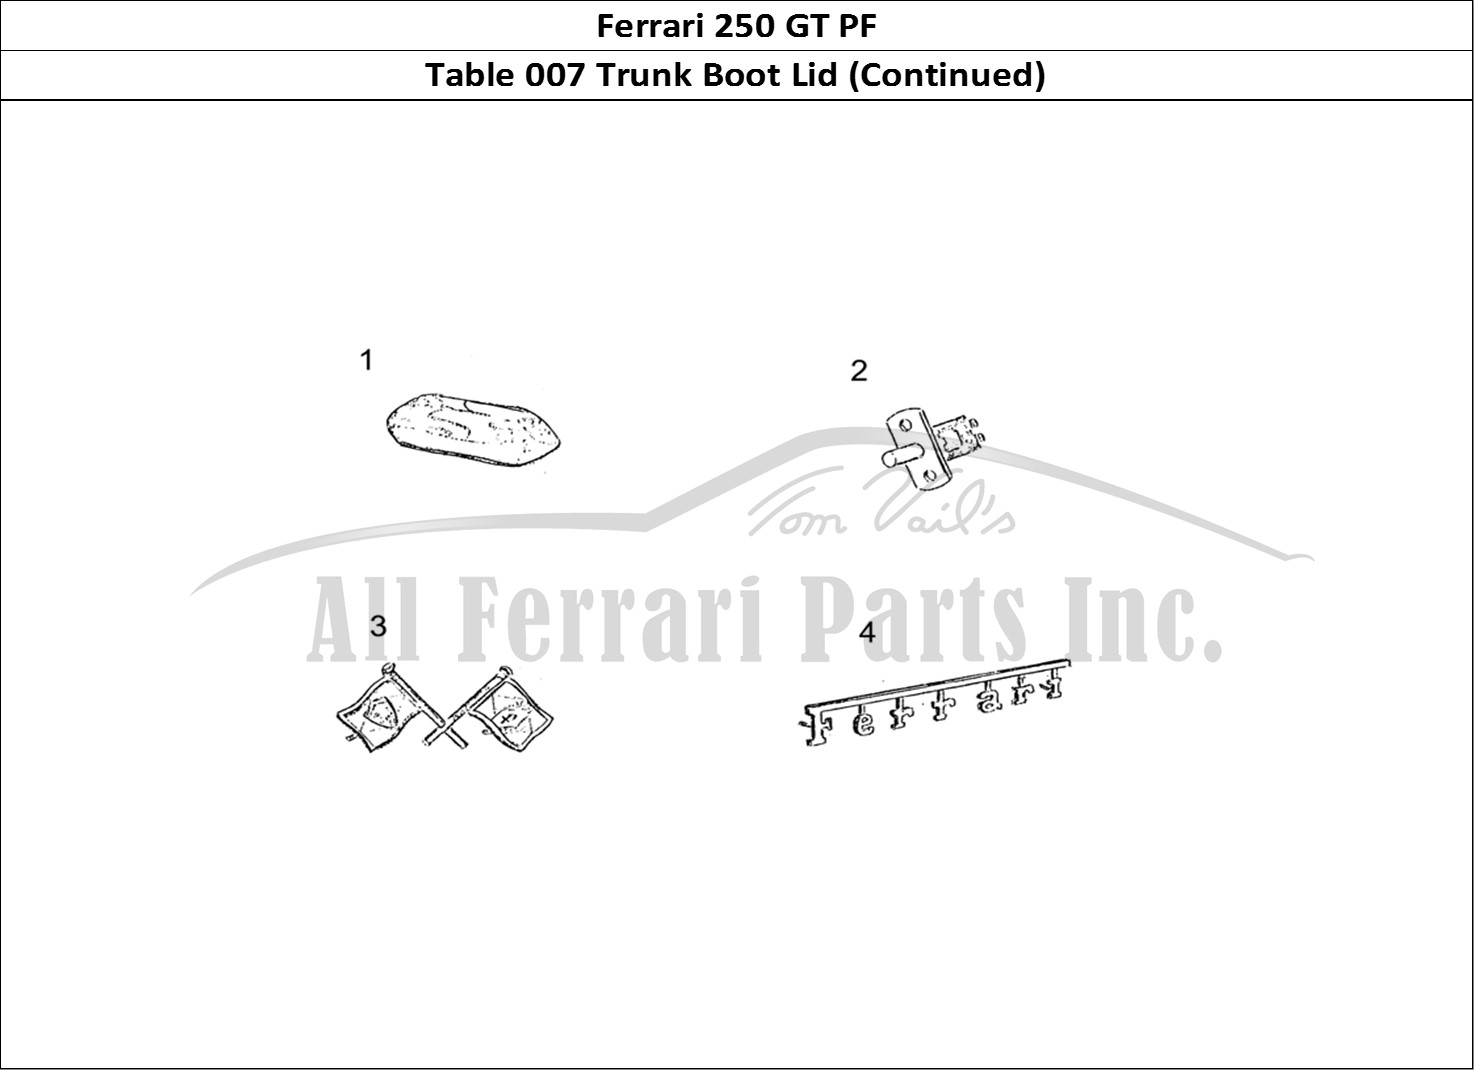 Ferrari Parts Ferrari 250 GT (Coachwork) Page 007 Boot Lid (continued)